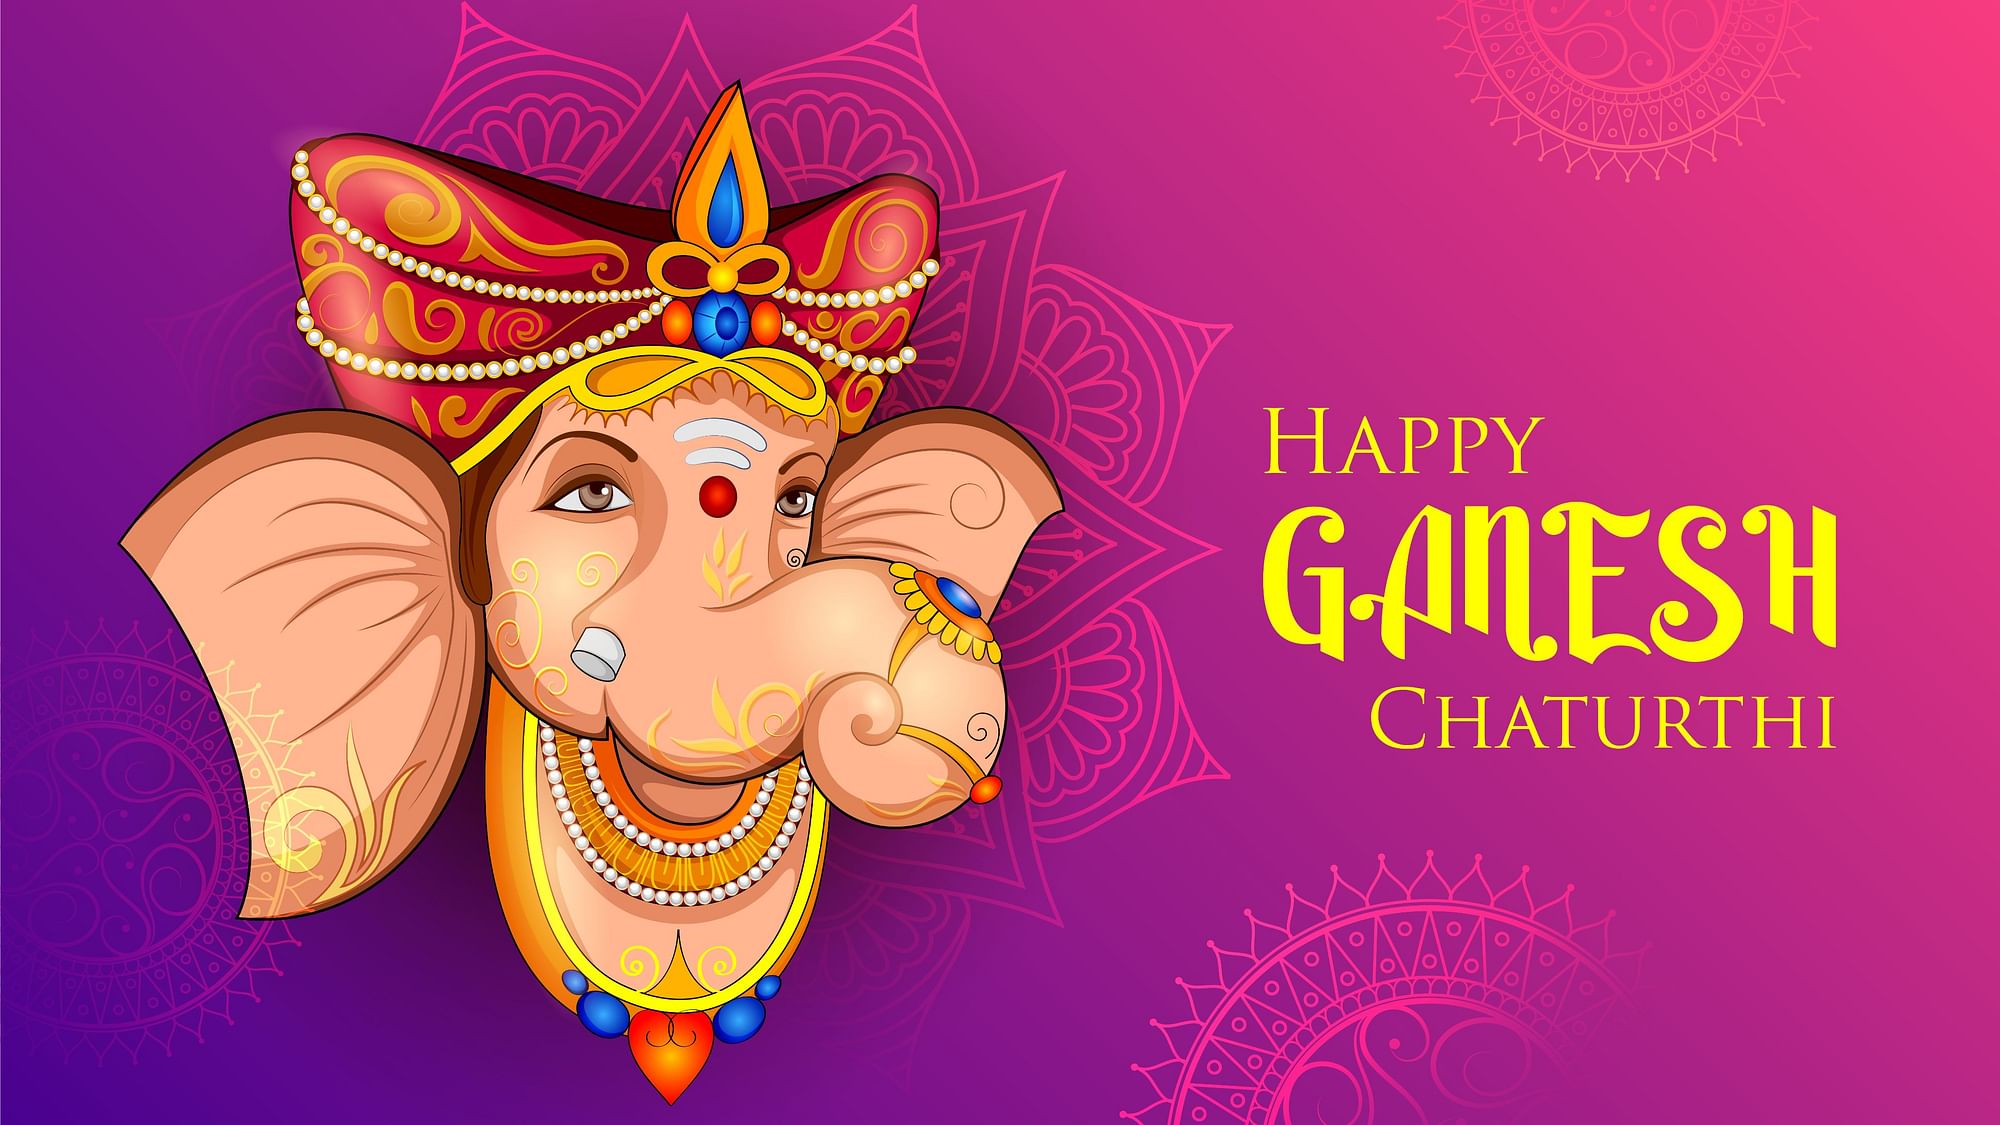 Ganesh Chaturthi 2020 Wishes In English Hindi Happy Ganesh Utsav Wishes Status Images 